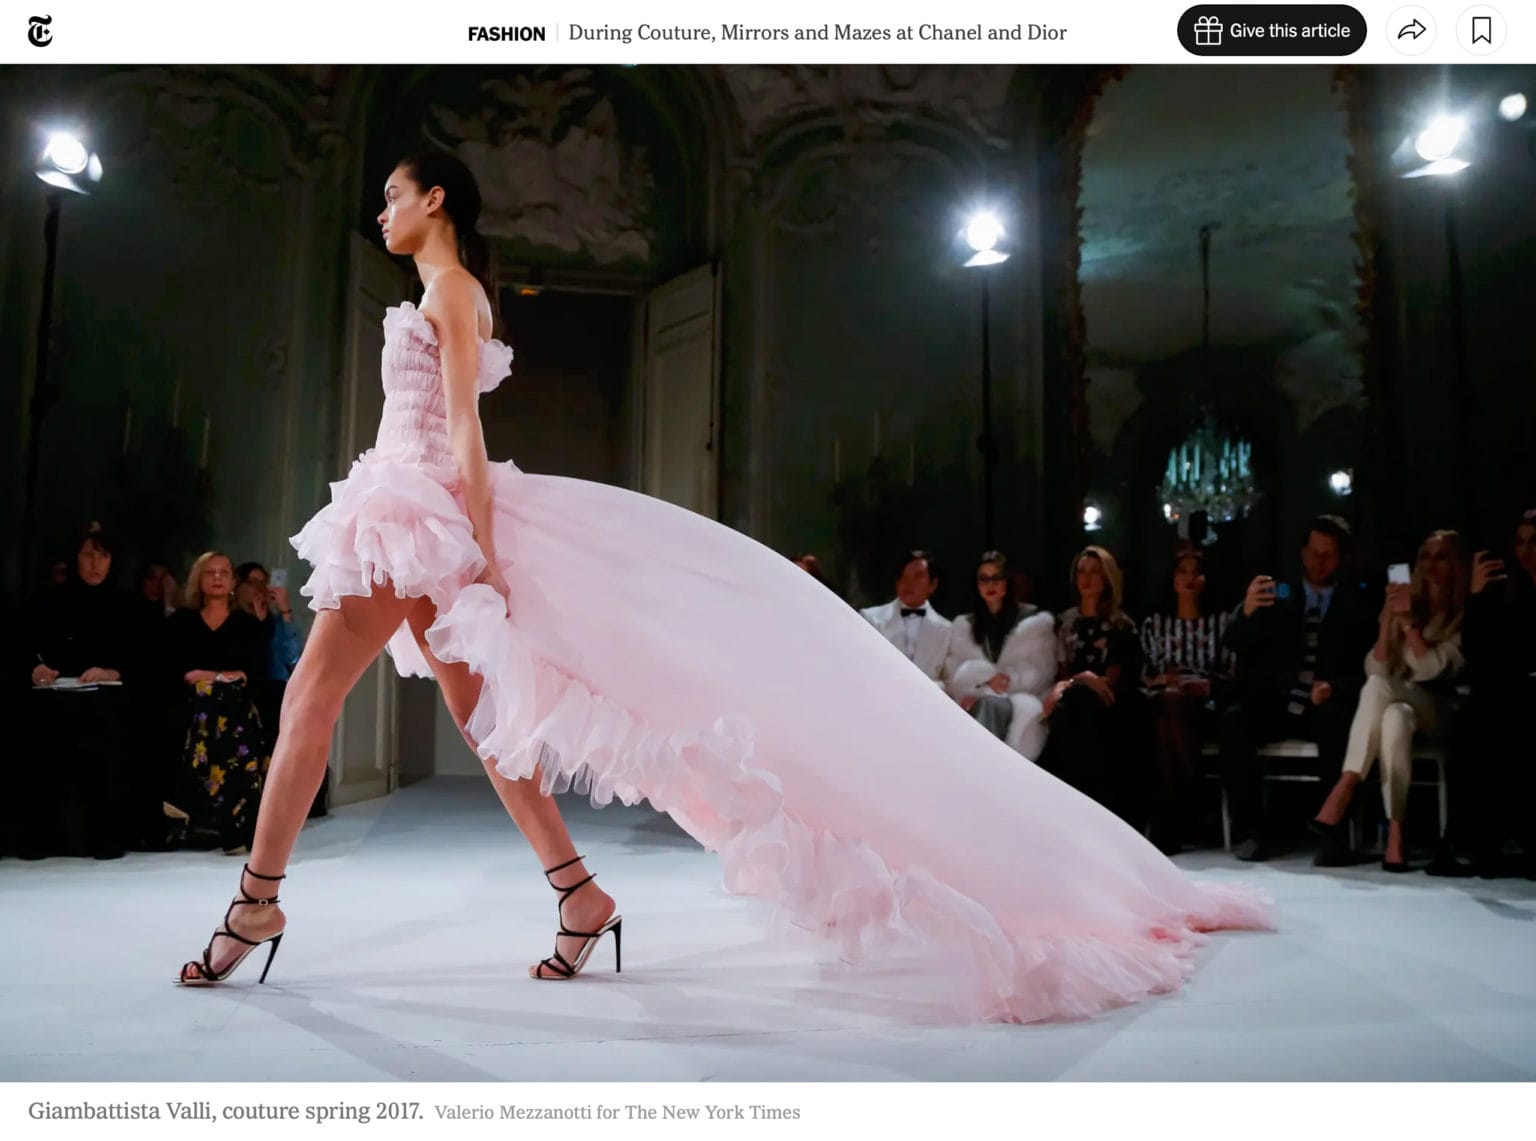 Giambattista Valli Fashion Show, Photo by Valerio Mezzanotti for The New York Times